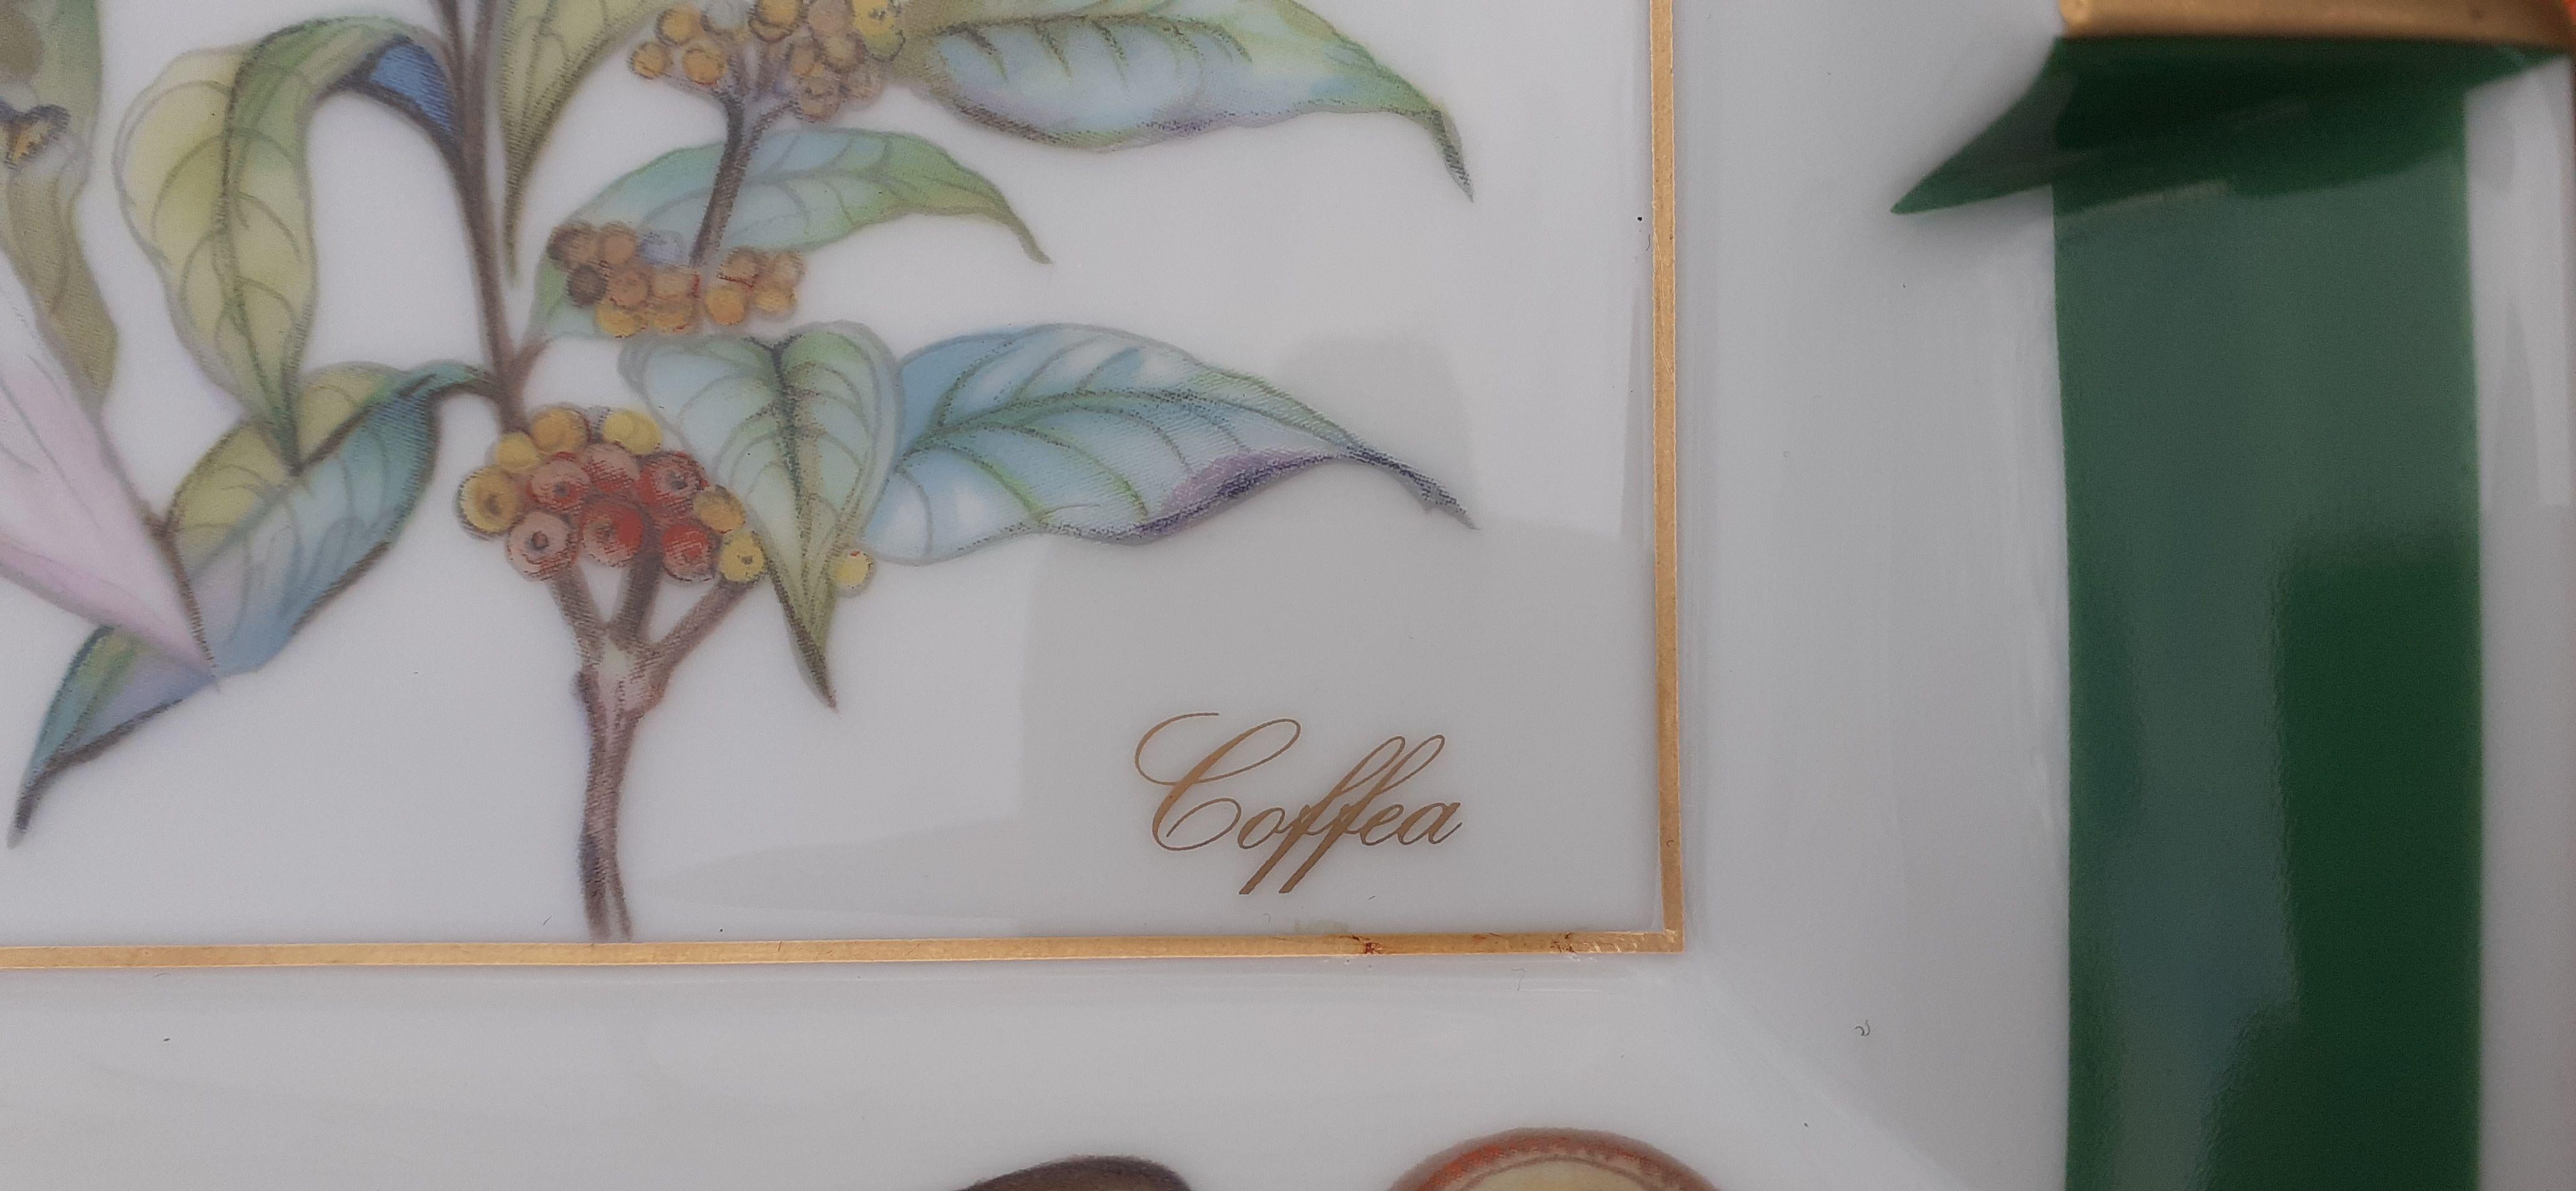 Hermès Zigarren-Aschenbecher Wechselgeld Tablett Coffea Coffee Café Druck in Porzellan (Grau) im Angebot